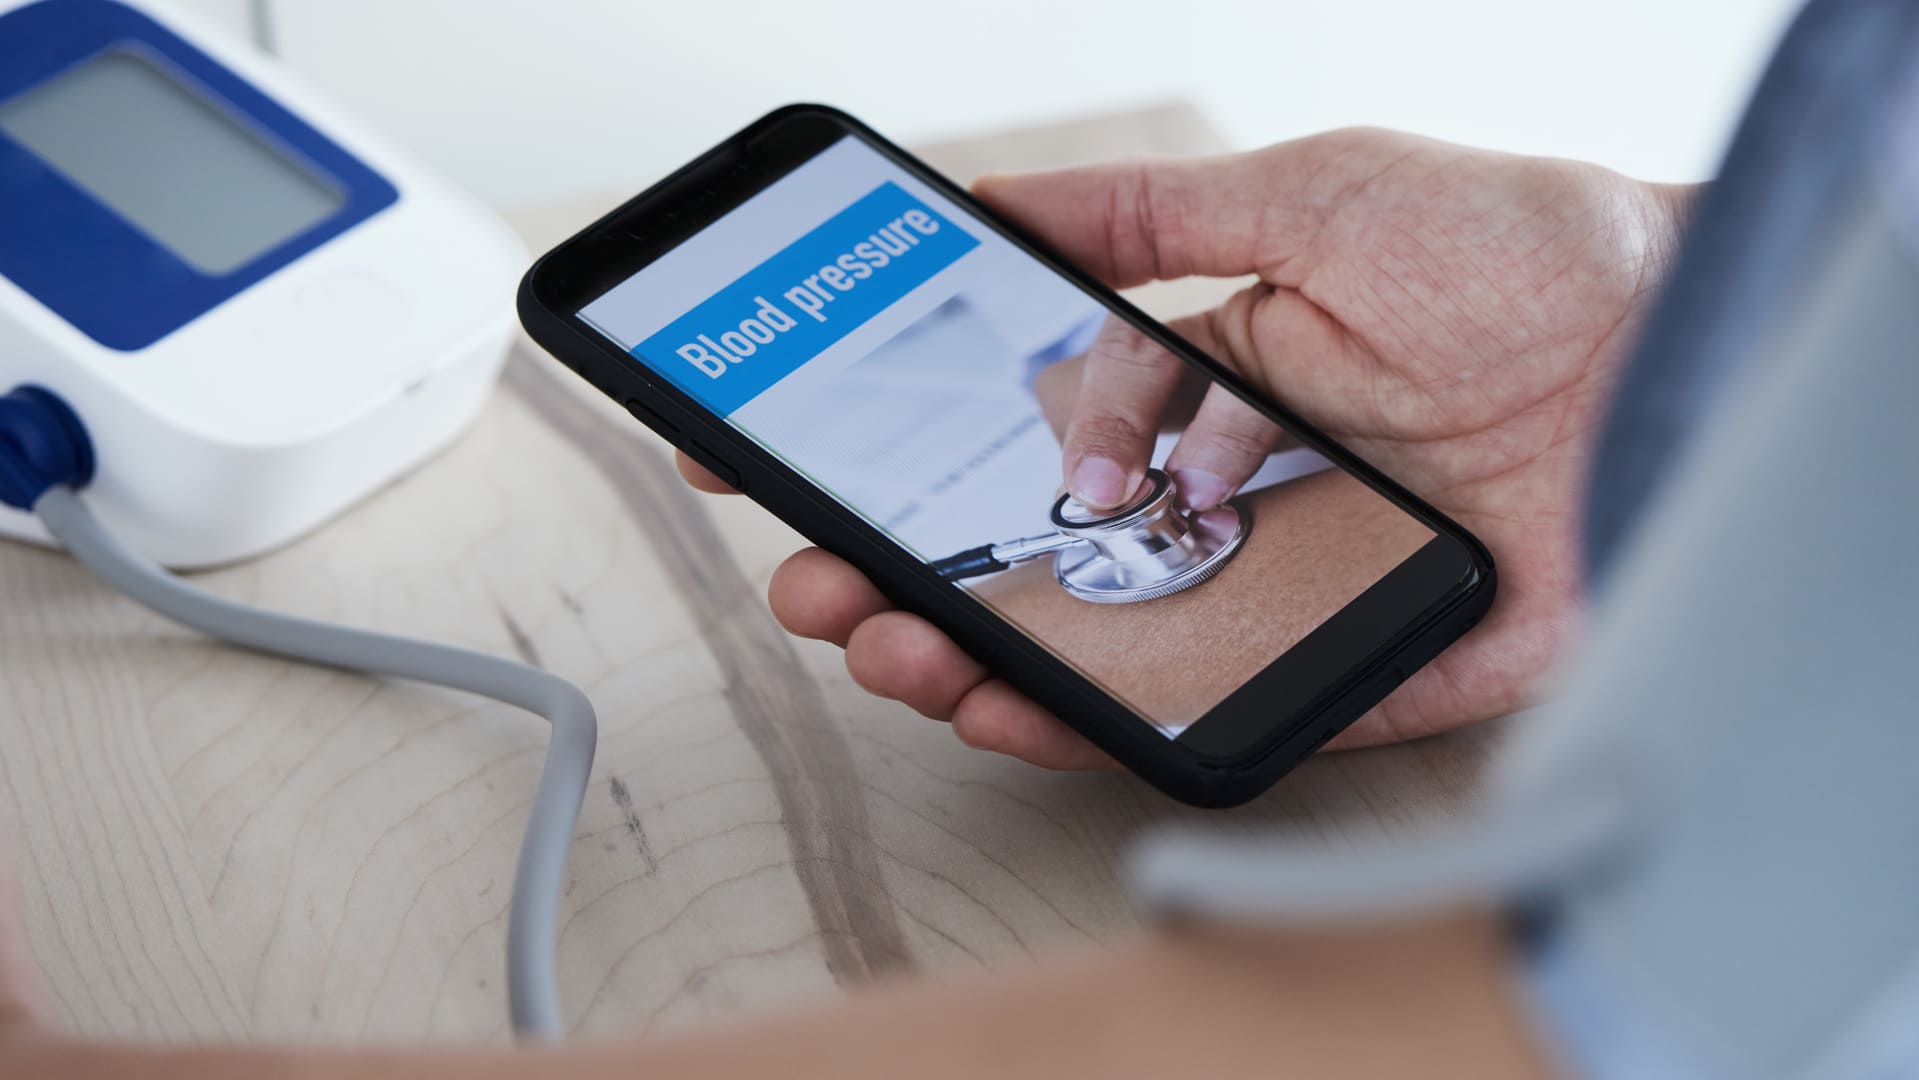 Blutdruckmessung mit dem Smartphone ist jetzt auch möglich